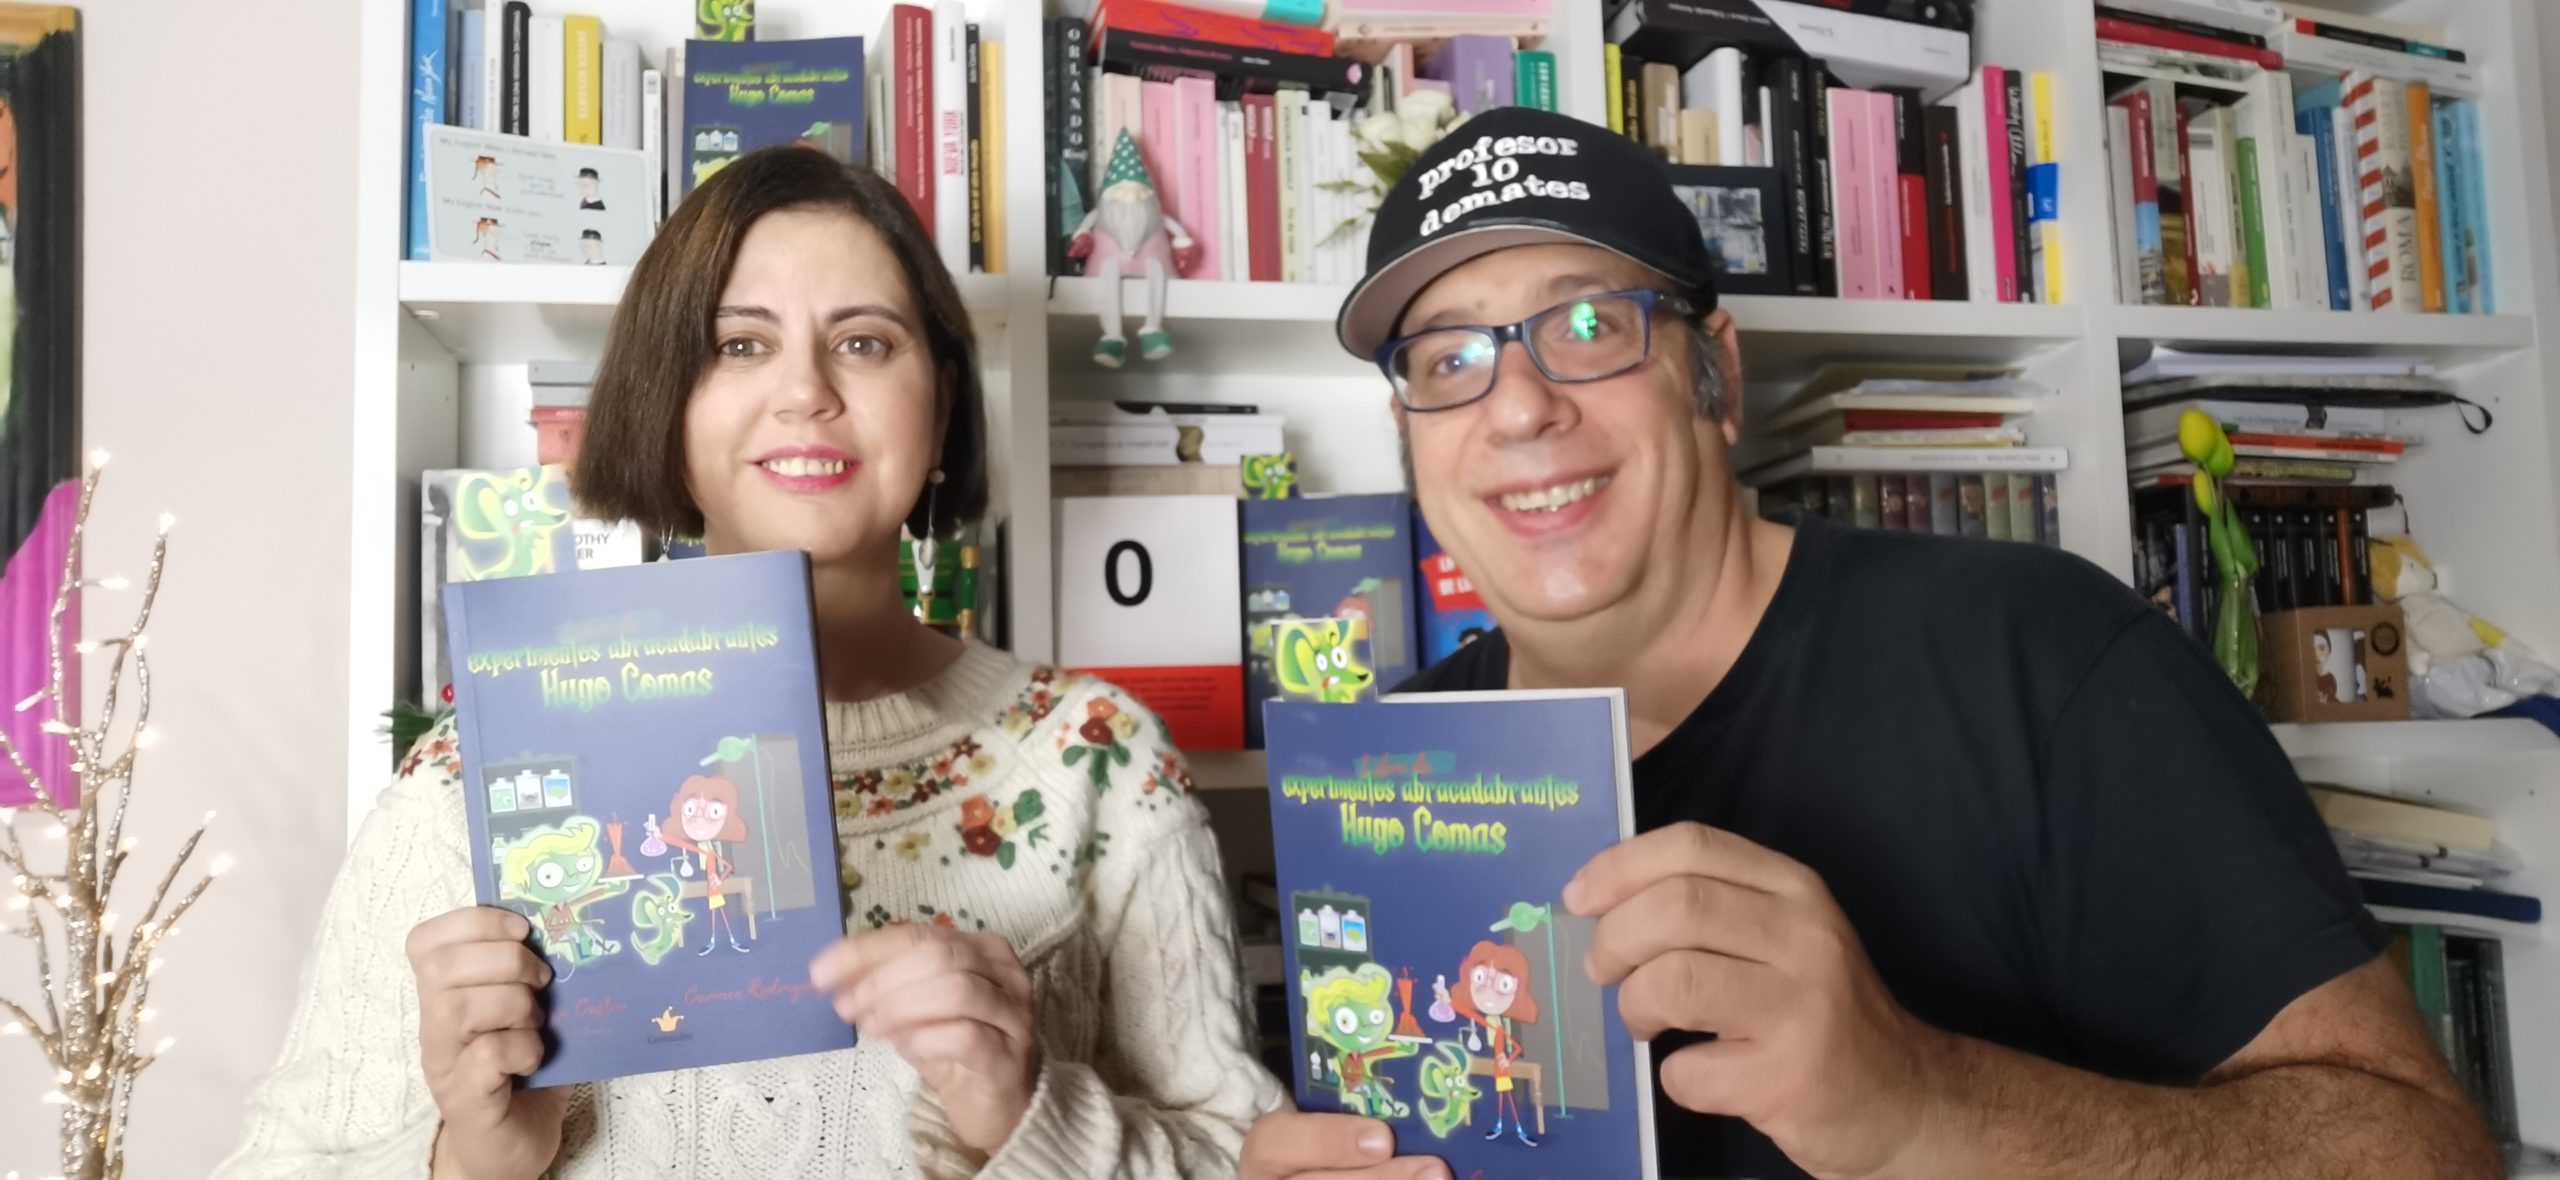 La escritora Carmen Rodriguez y profesor10demates con libro de experimentos de Hugo COmas filomeno sarah